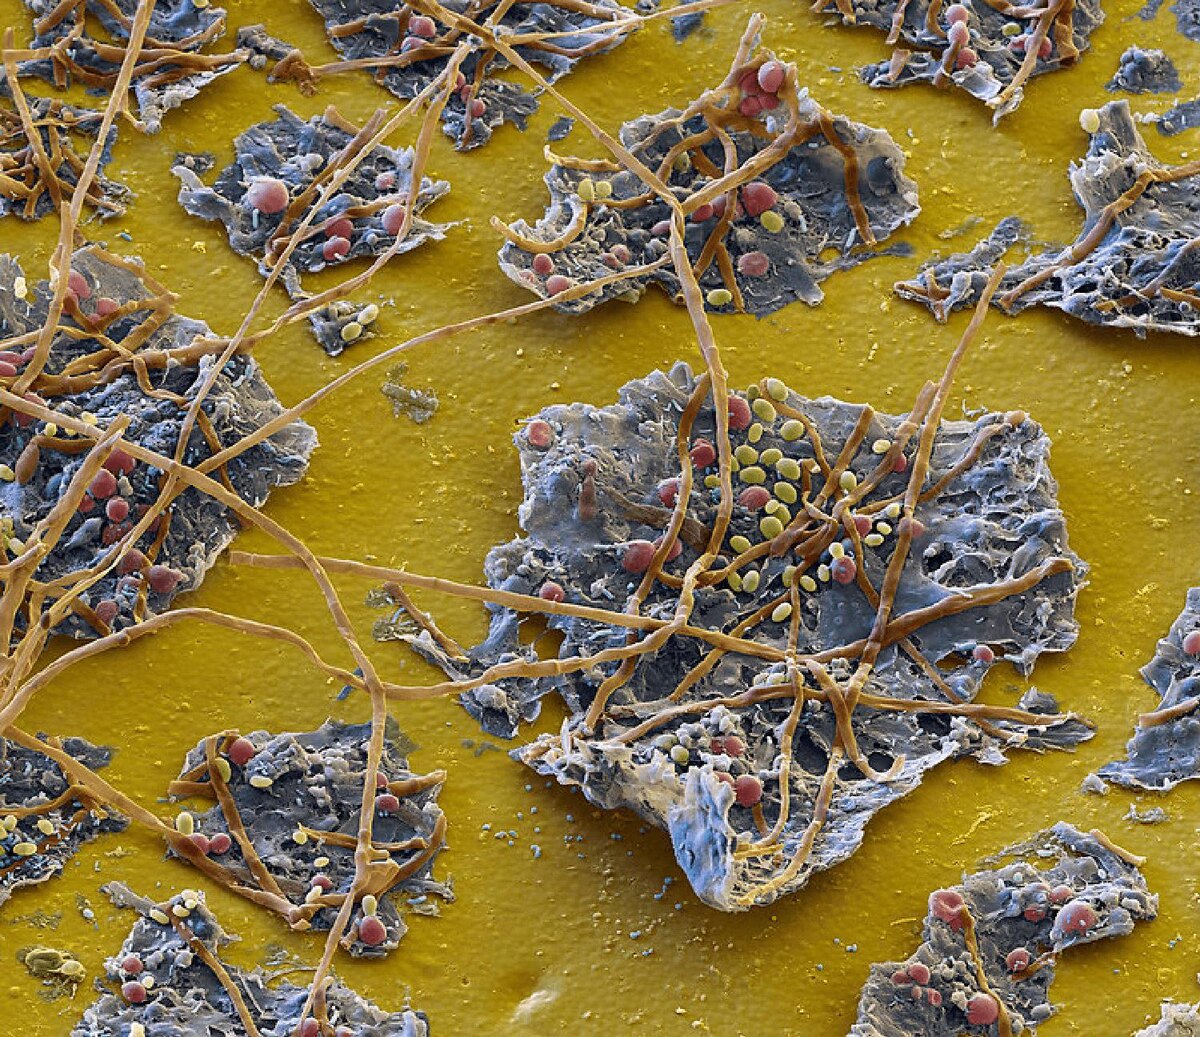 Микроорганизмы на поверхности изделия. Хорошо видно плесень (длинные коричневые нити) и дрожжи (красные и жёлтые округлые клетки). Электронный микроскоп. Увеличение: x1000 раз. 